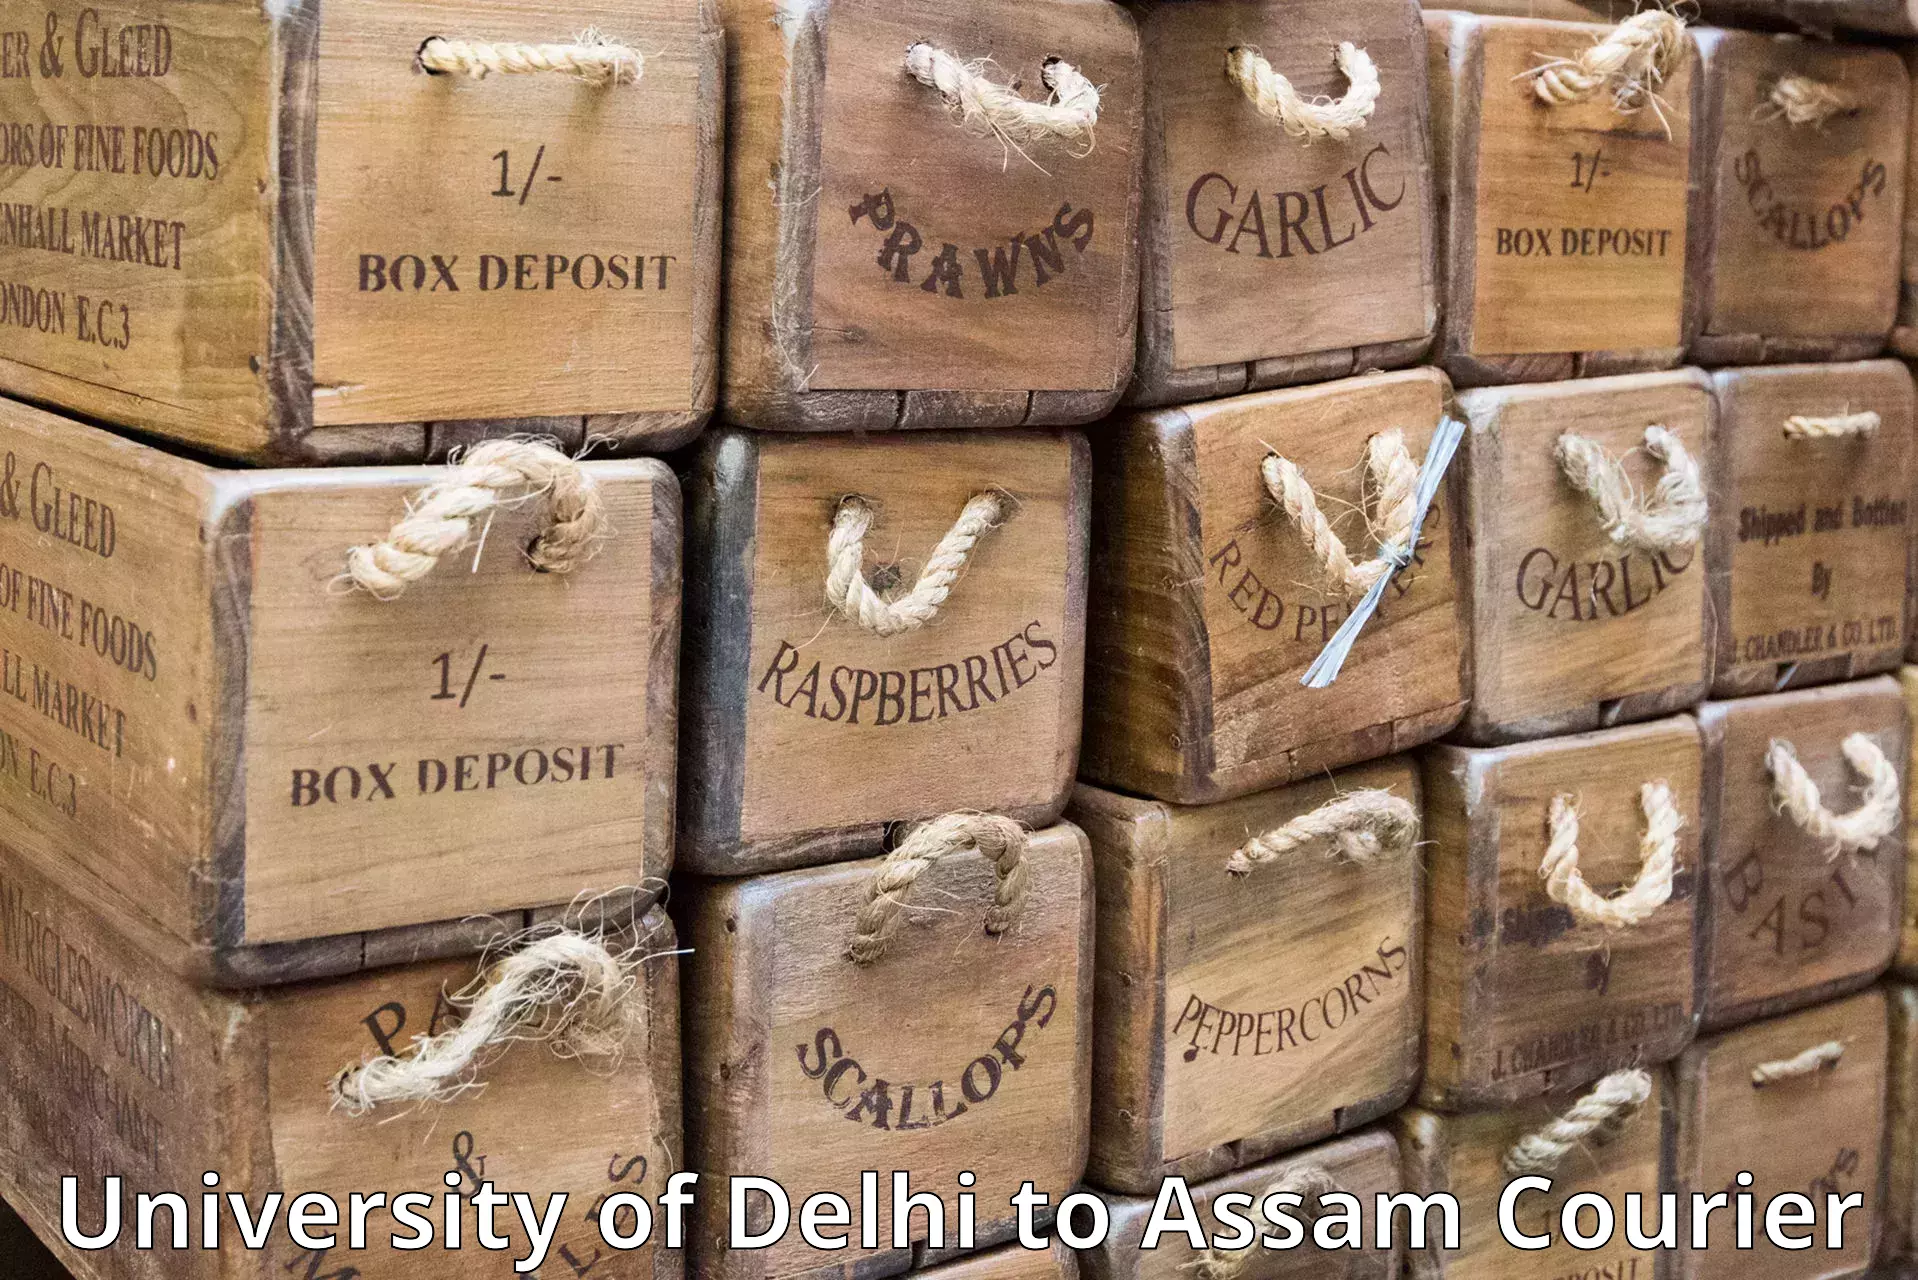 Courier service comparison University of Delhi to Assam University Silchar